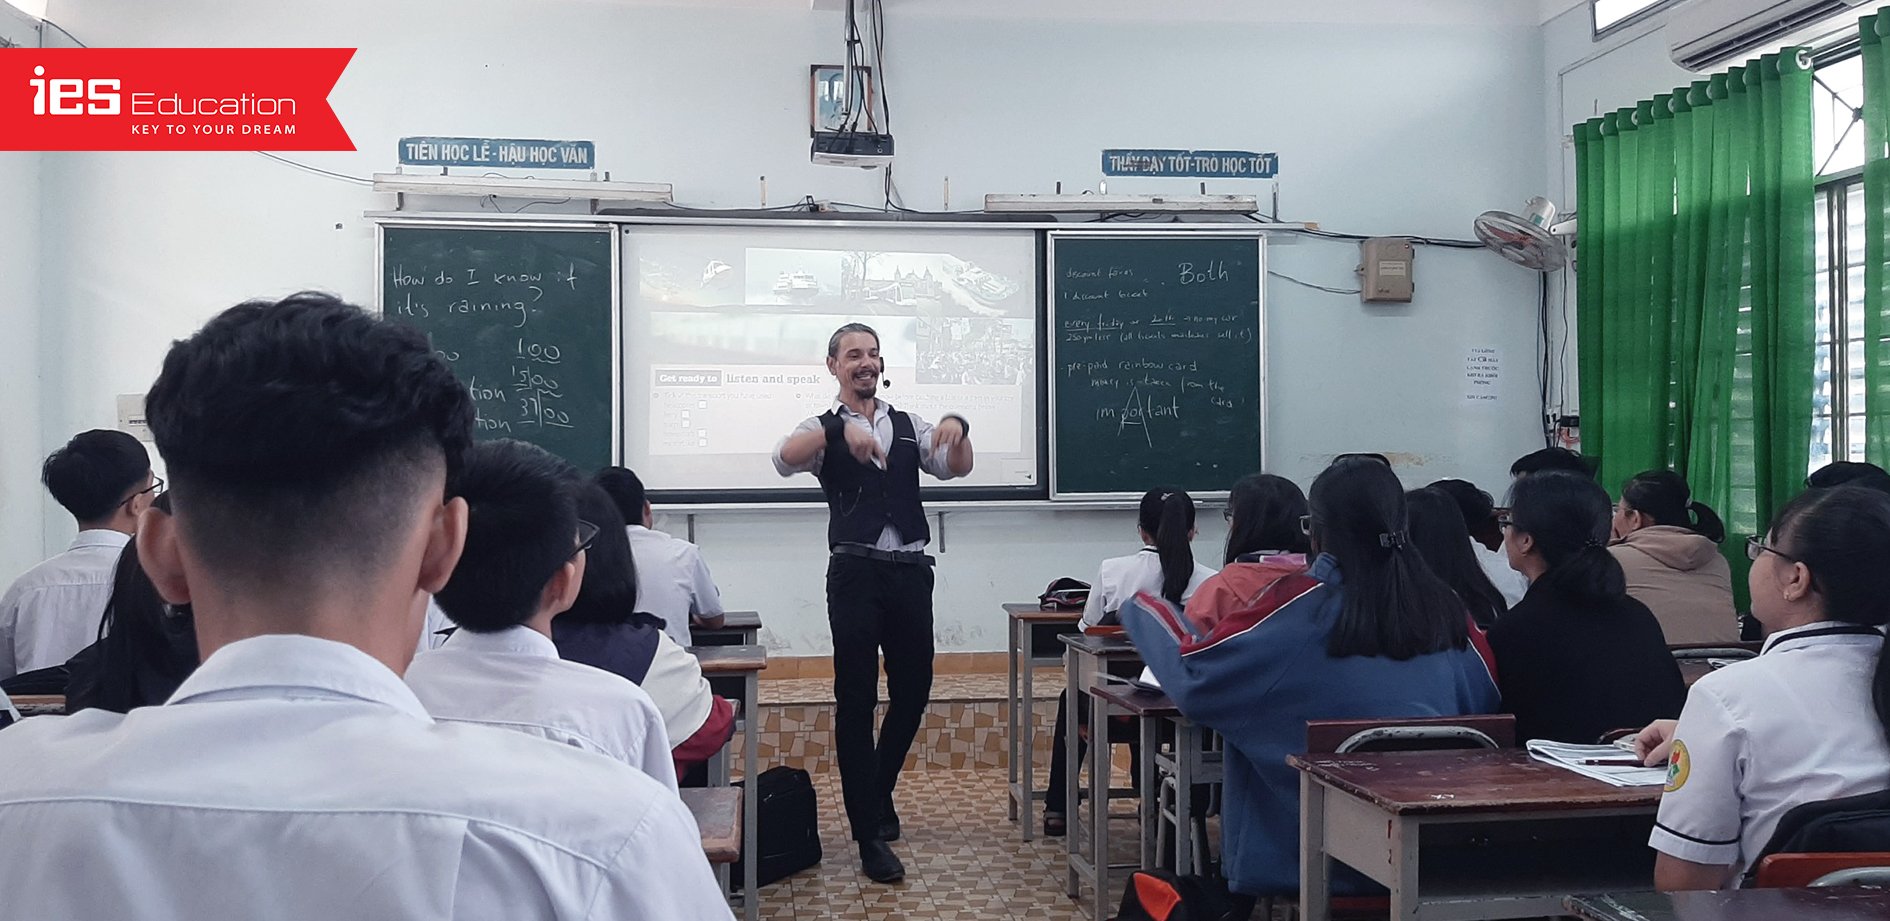 Học tiếng Anh với Giáo viên nước ngoài - IES Education